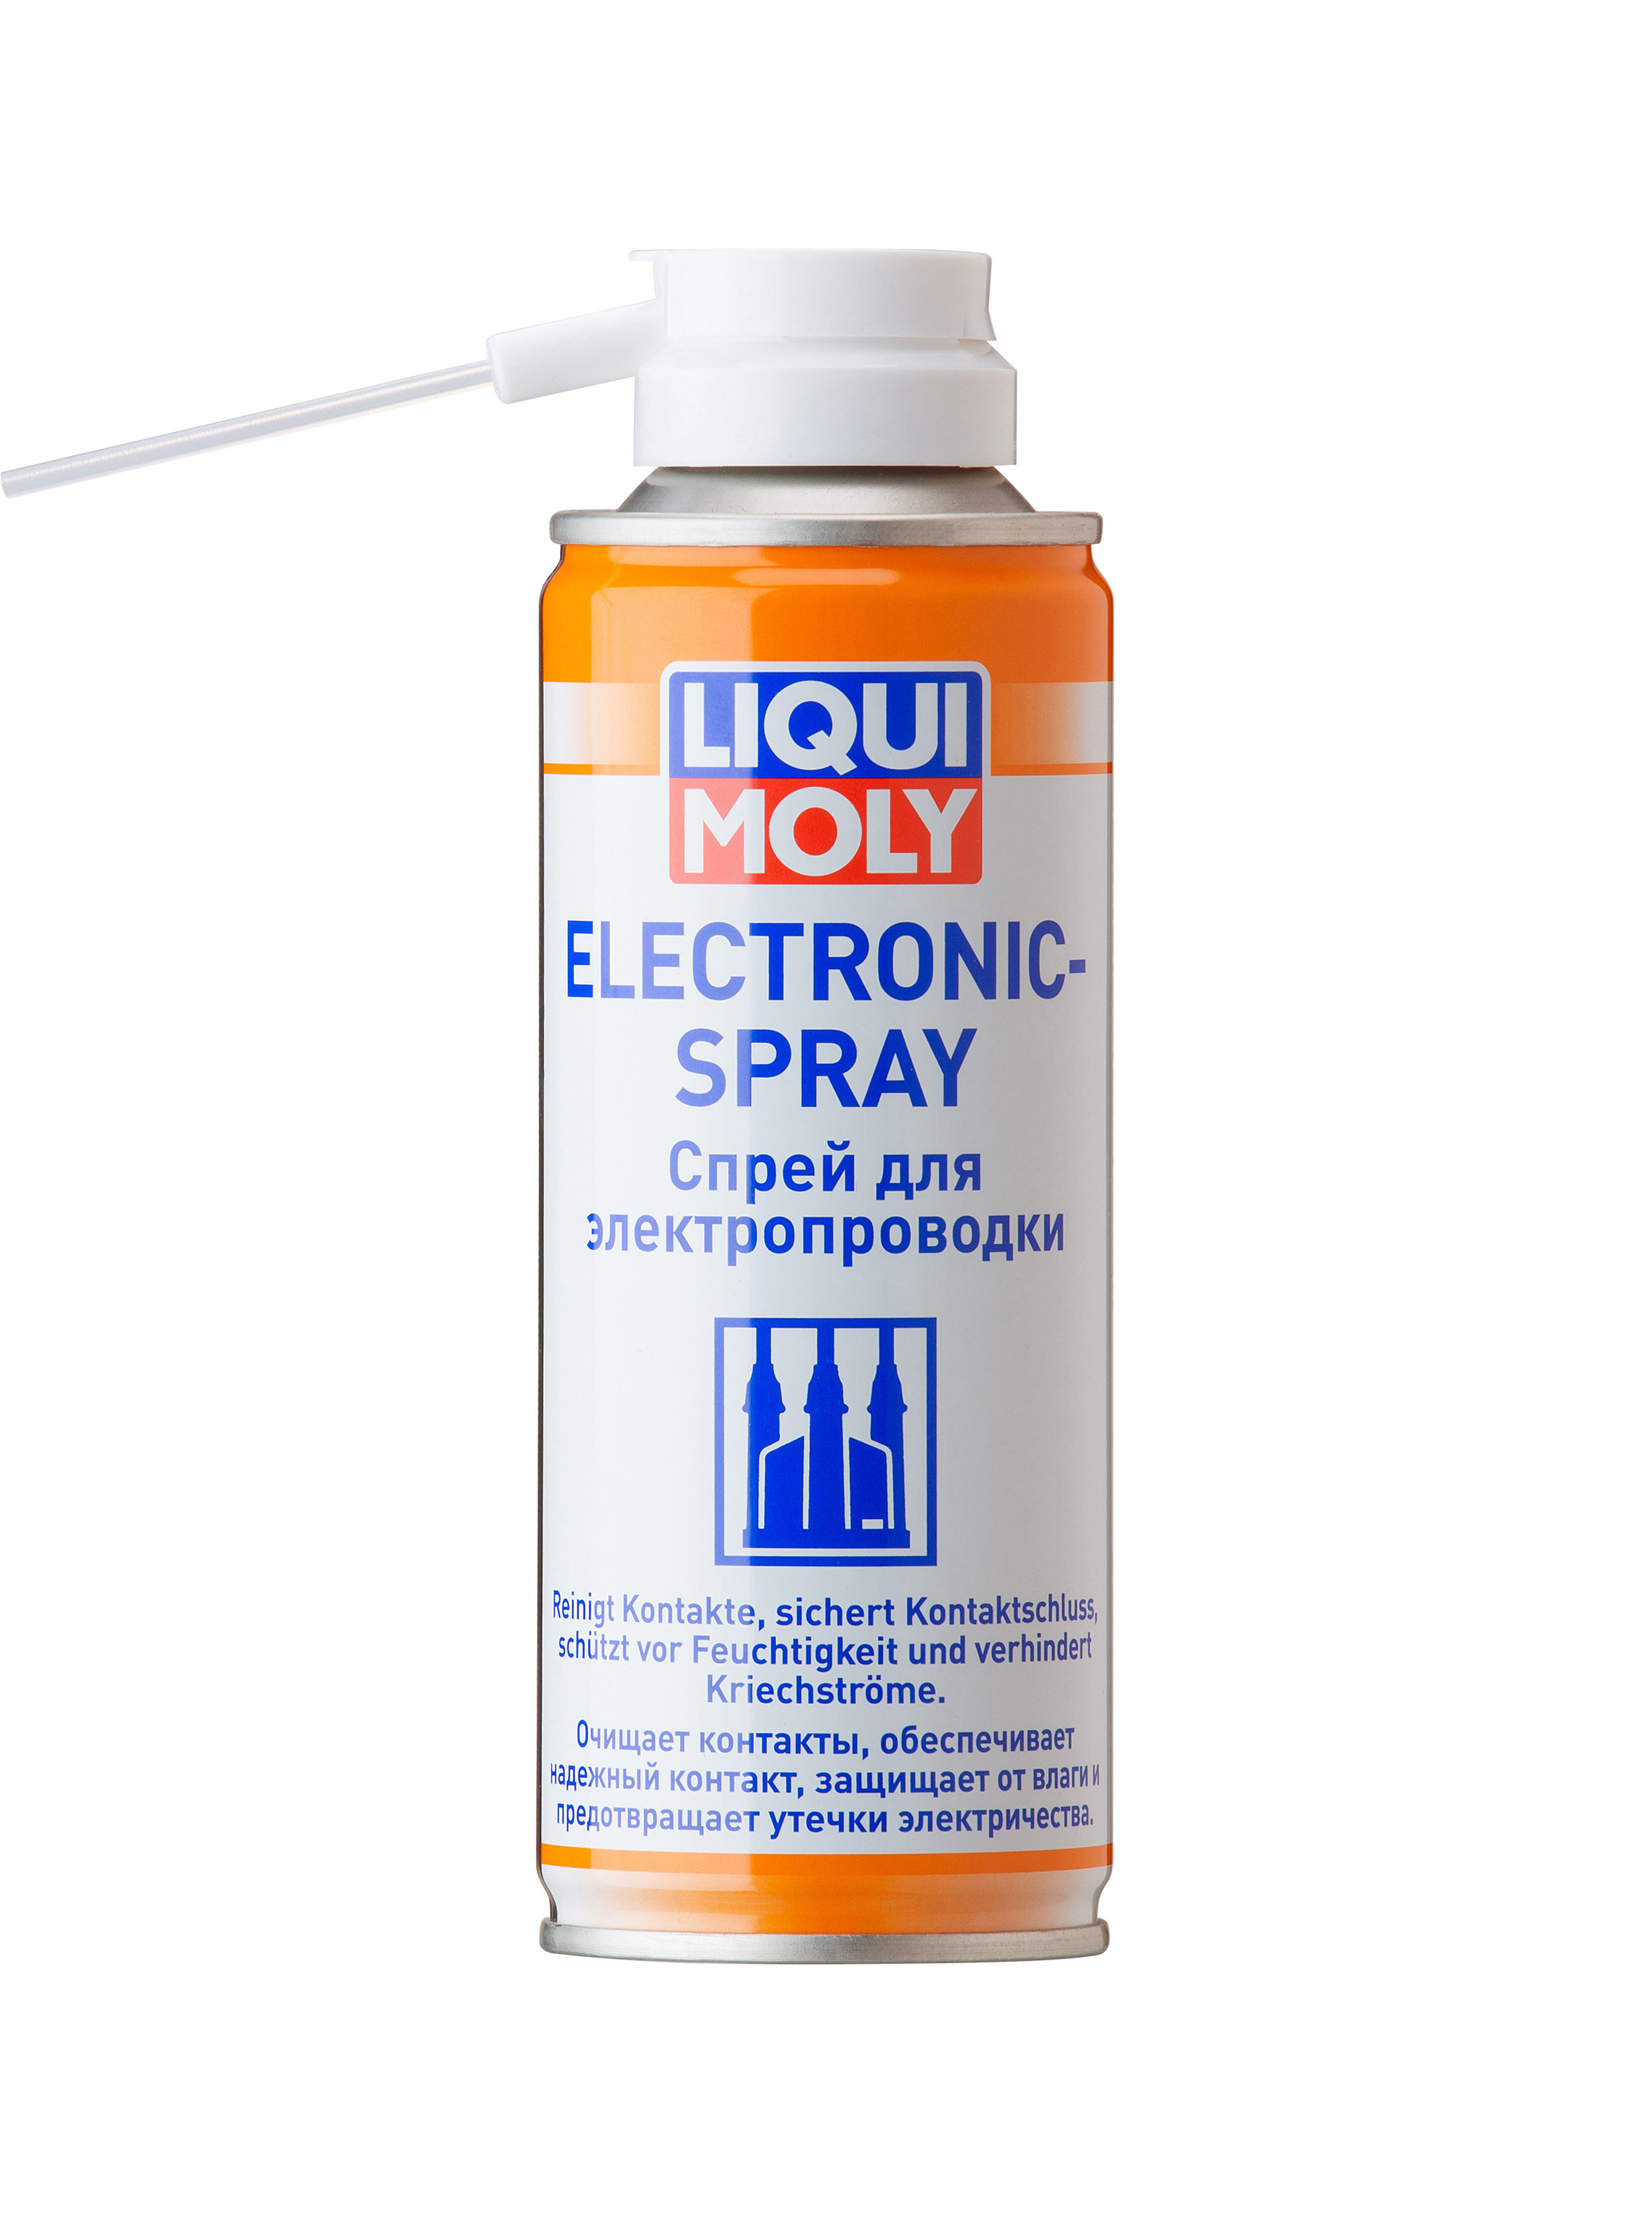 Спрей для электропроводки LIQUI MOLY Electronic-Spray (0,2 литра)